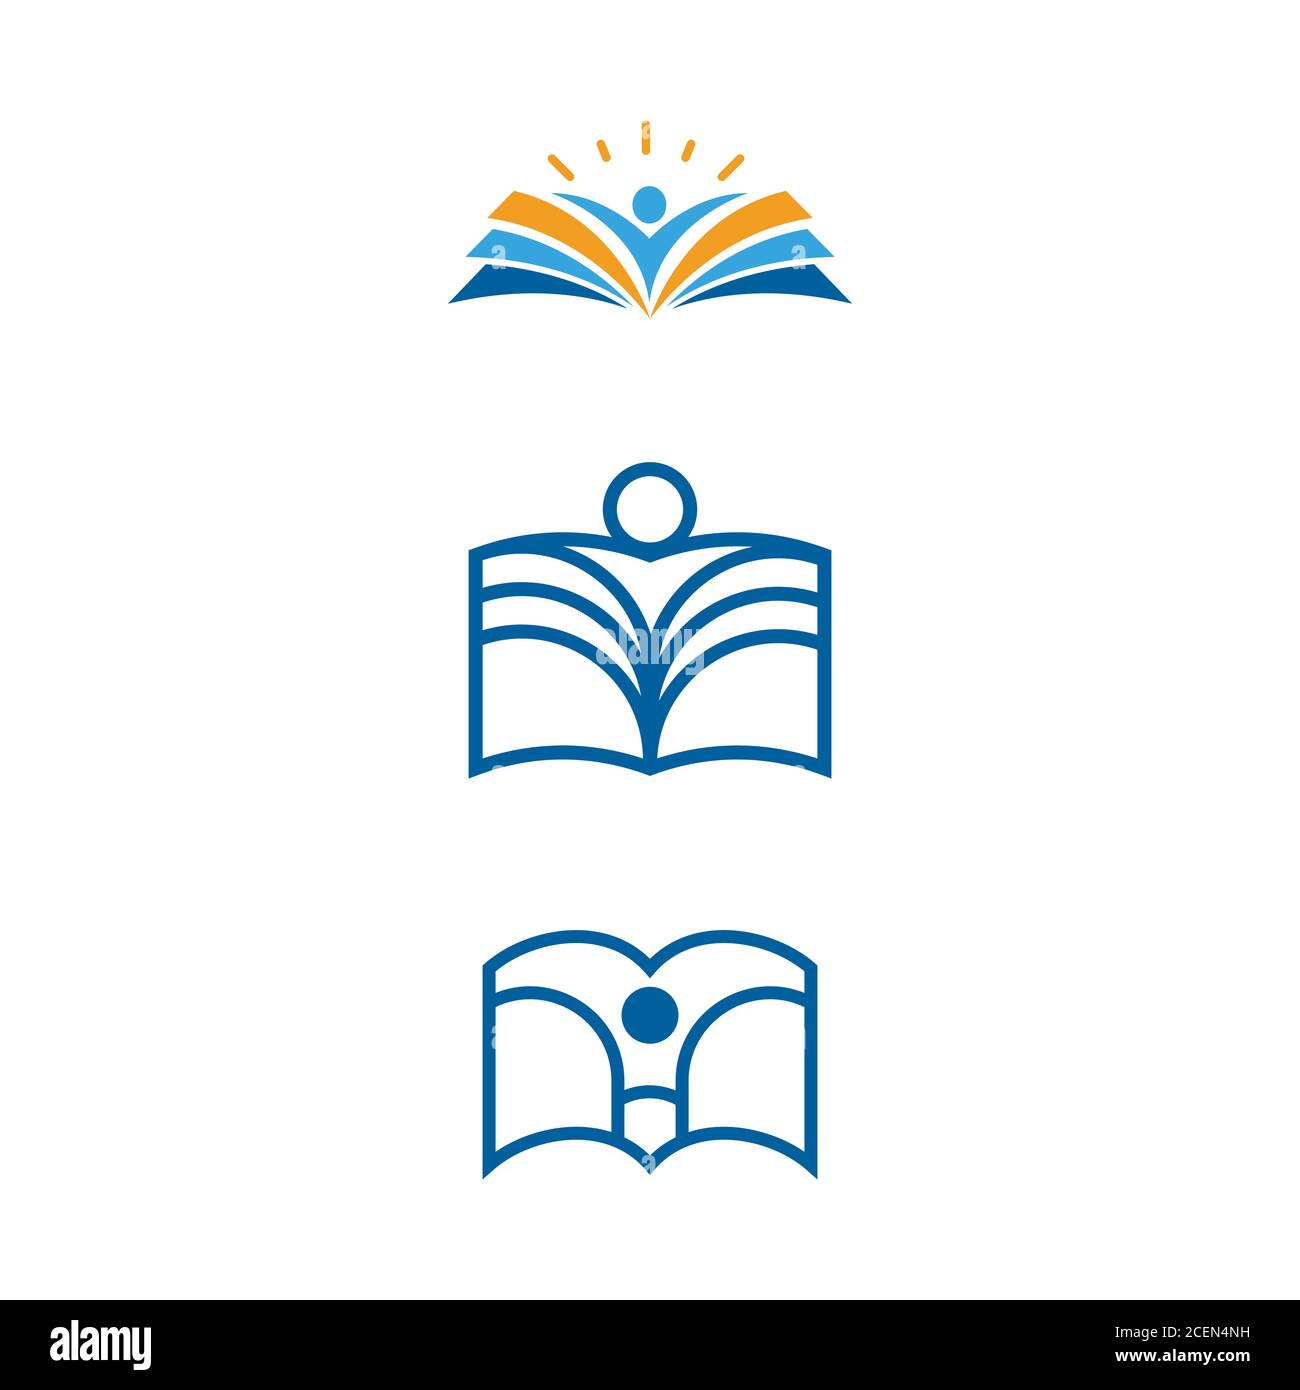 Disegno dell'illustrazione dell'icona vettoriale del modello del libro didattico Illustrazione Vettoriale